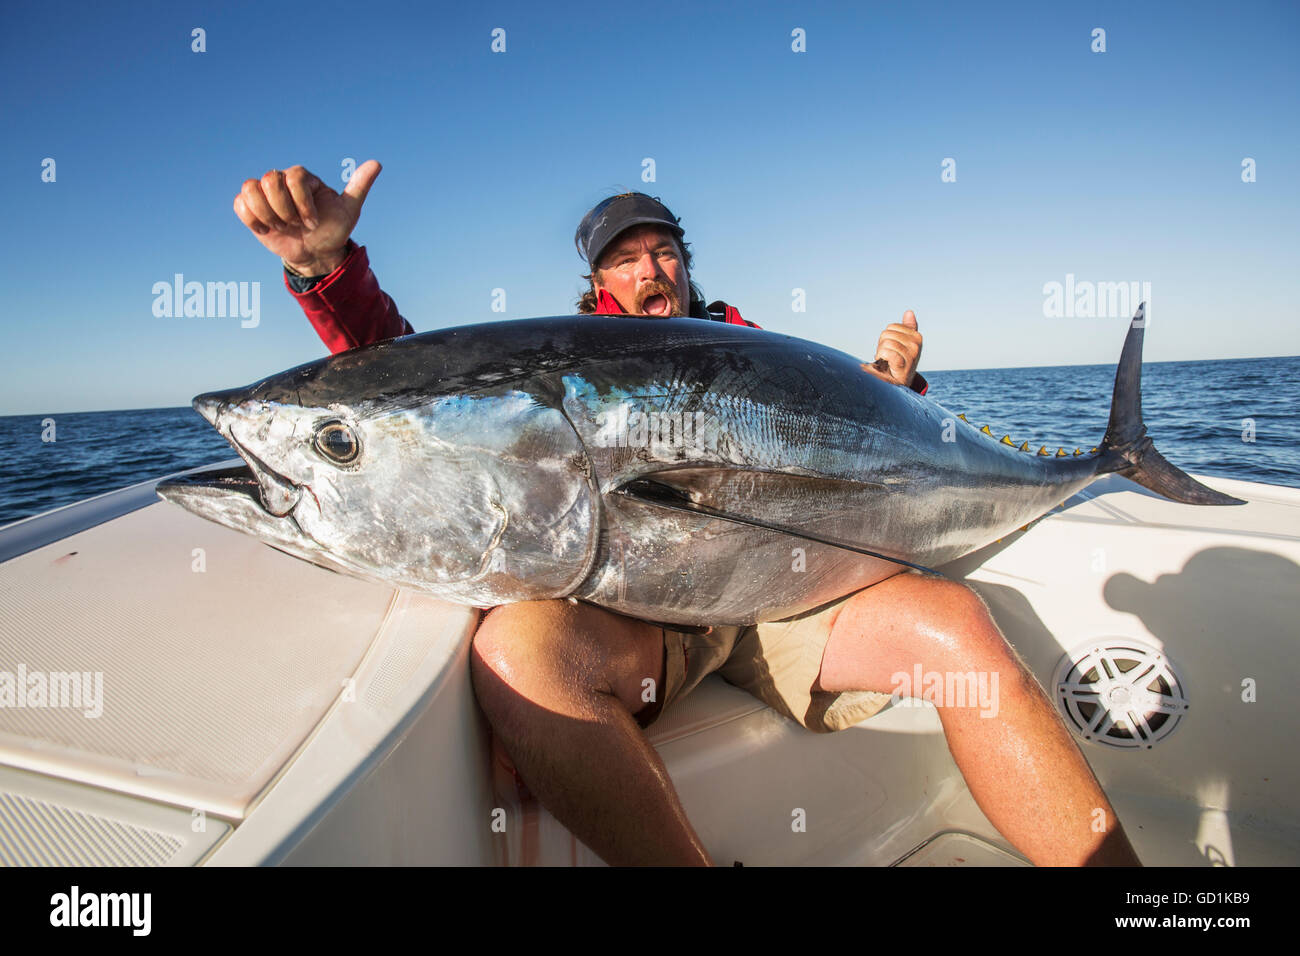 Fishing for false albacore tuna off the coast of Cape Cod; Massachusetts, United States of America Stock Photo